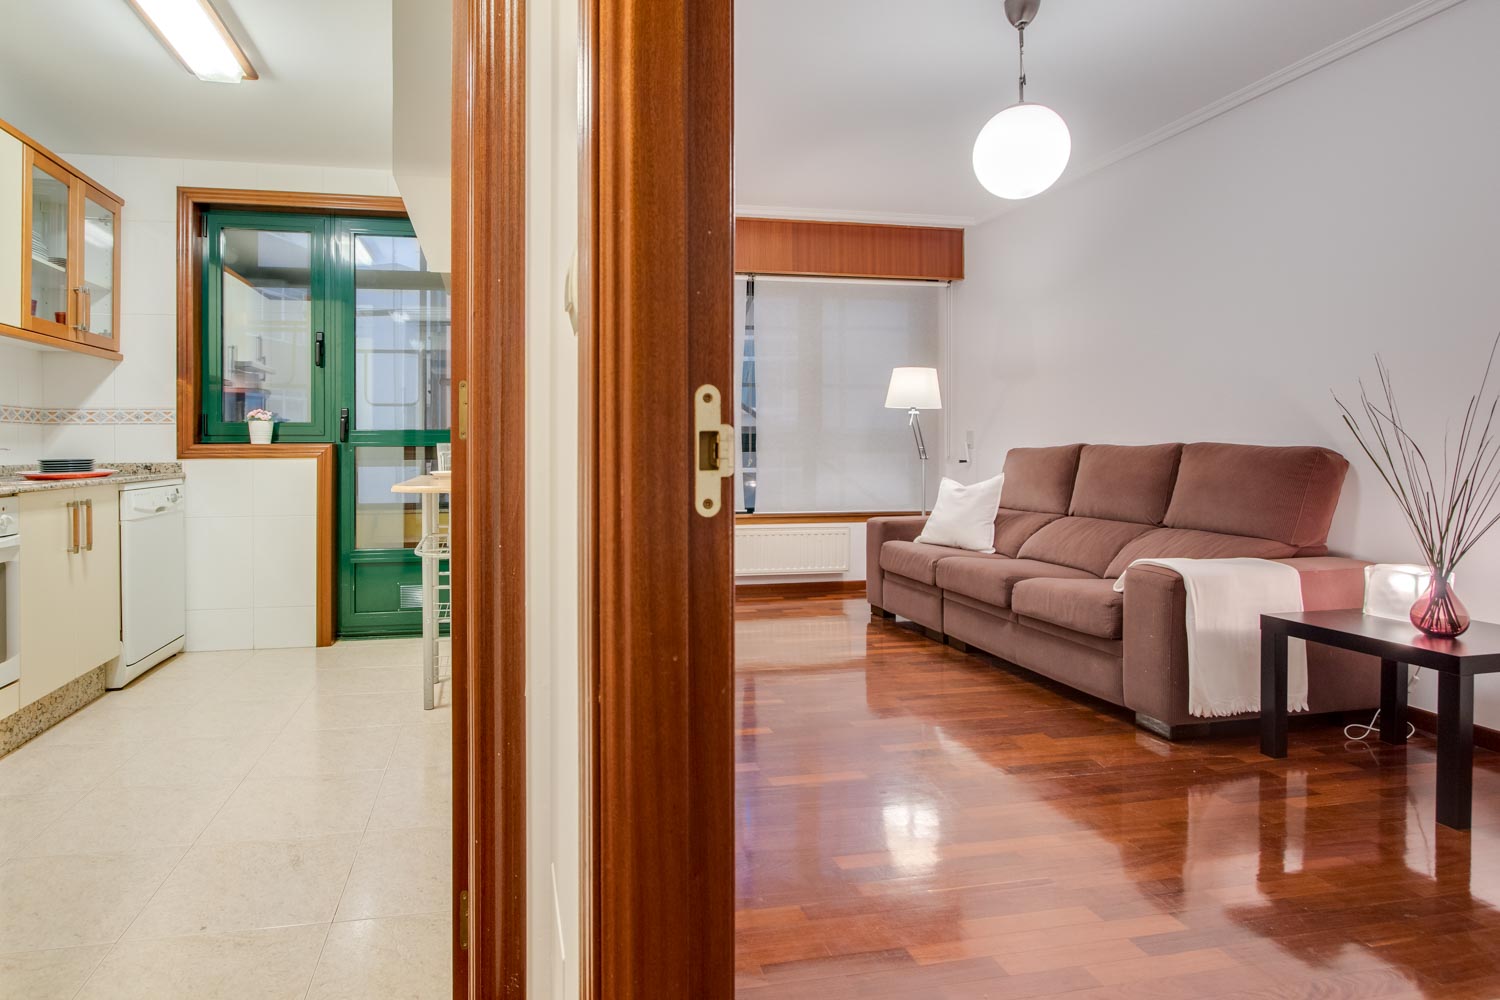 Fotografía entre cocina y salón en piso de Sada_ carpinterías de pvc verde